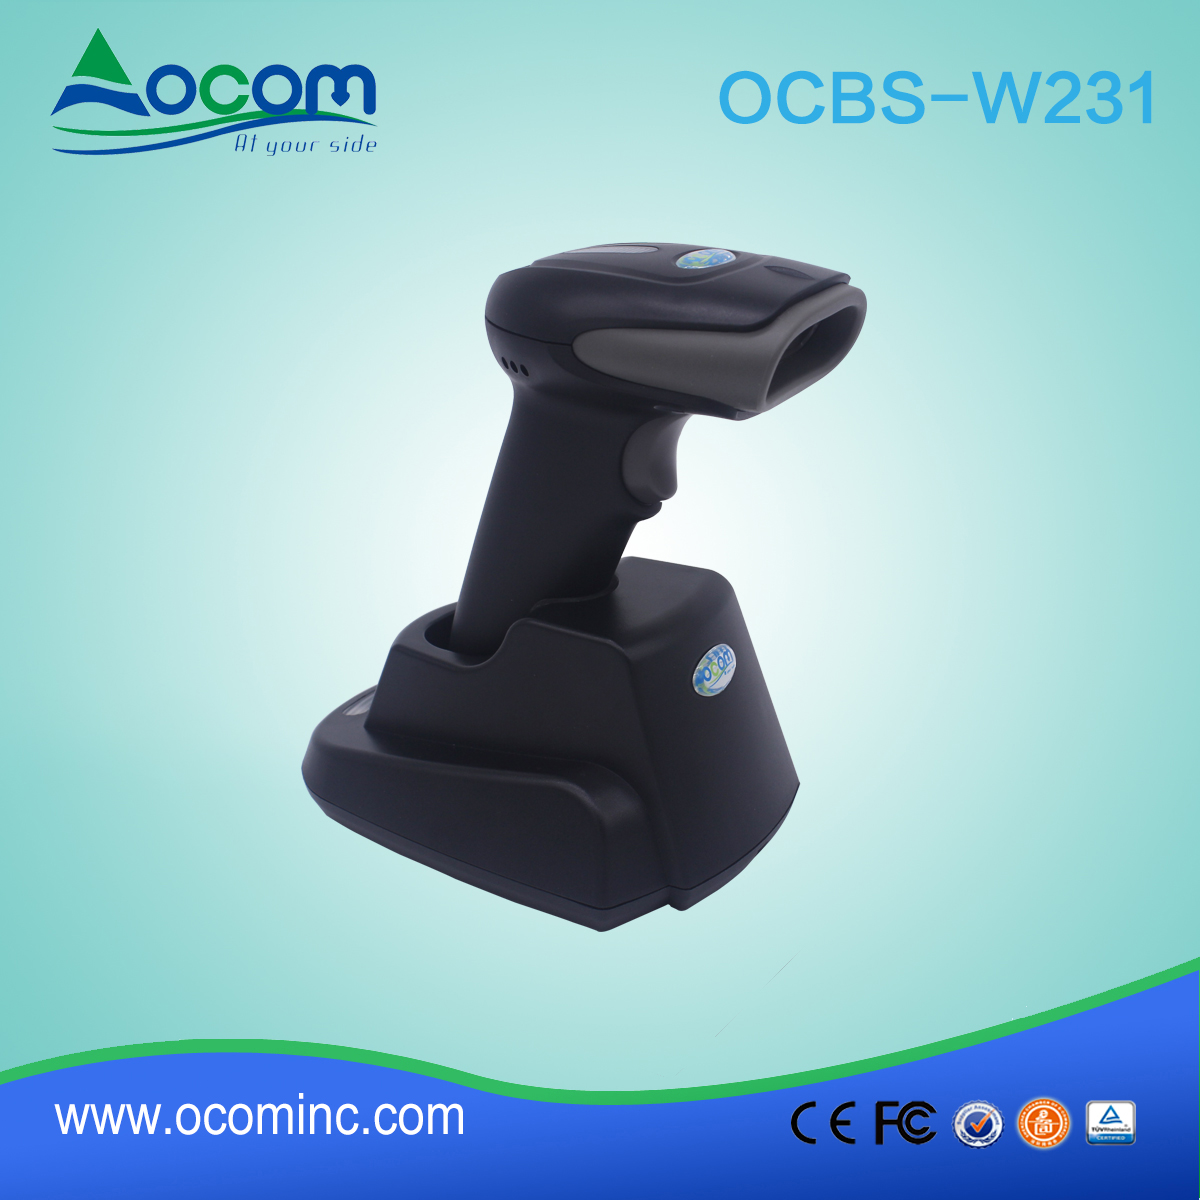 OCBS-W231 Handheld Bluetooth USB Barcode Scanner für Inventar